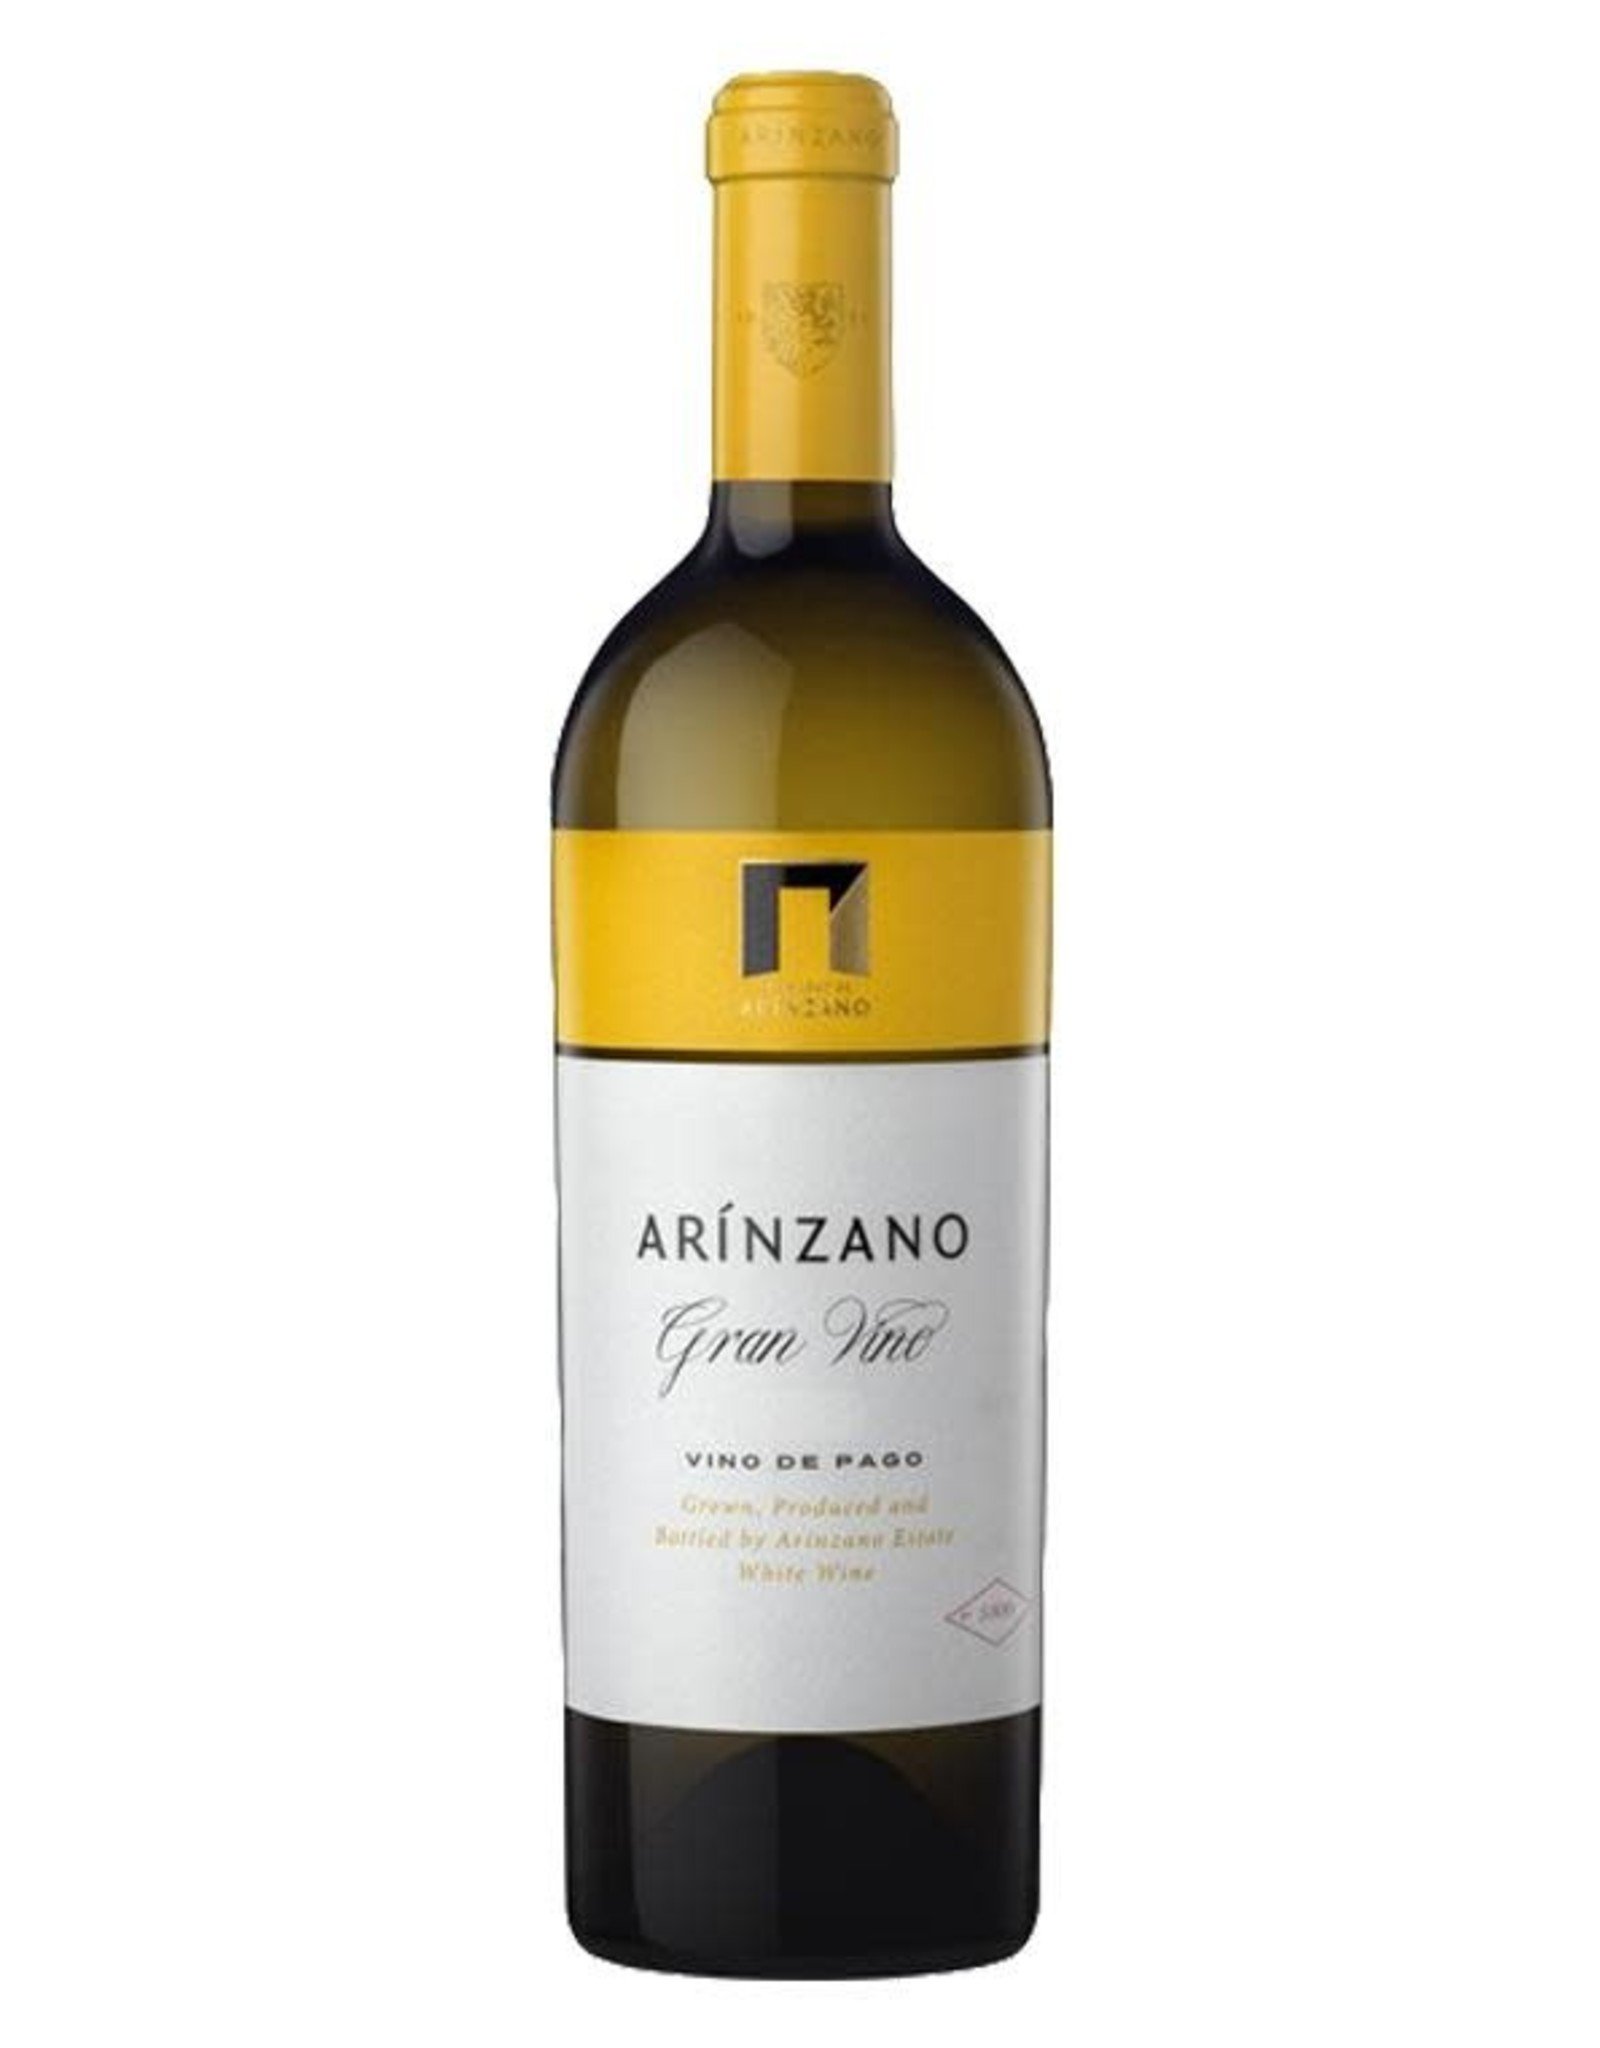 Arinzano Gran Vino White Spain 2014